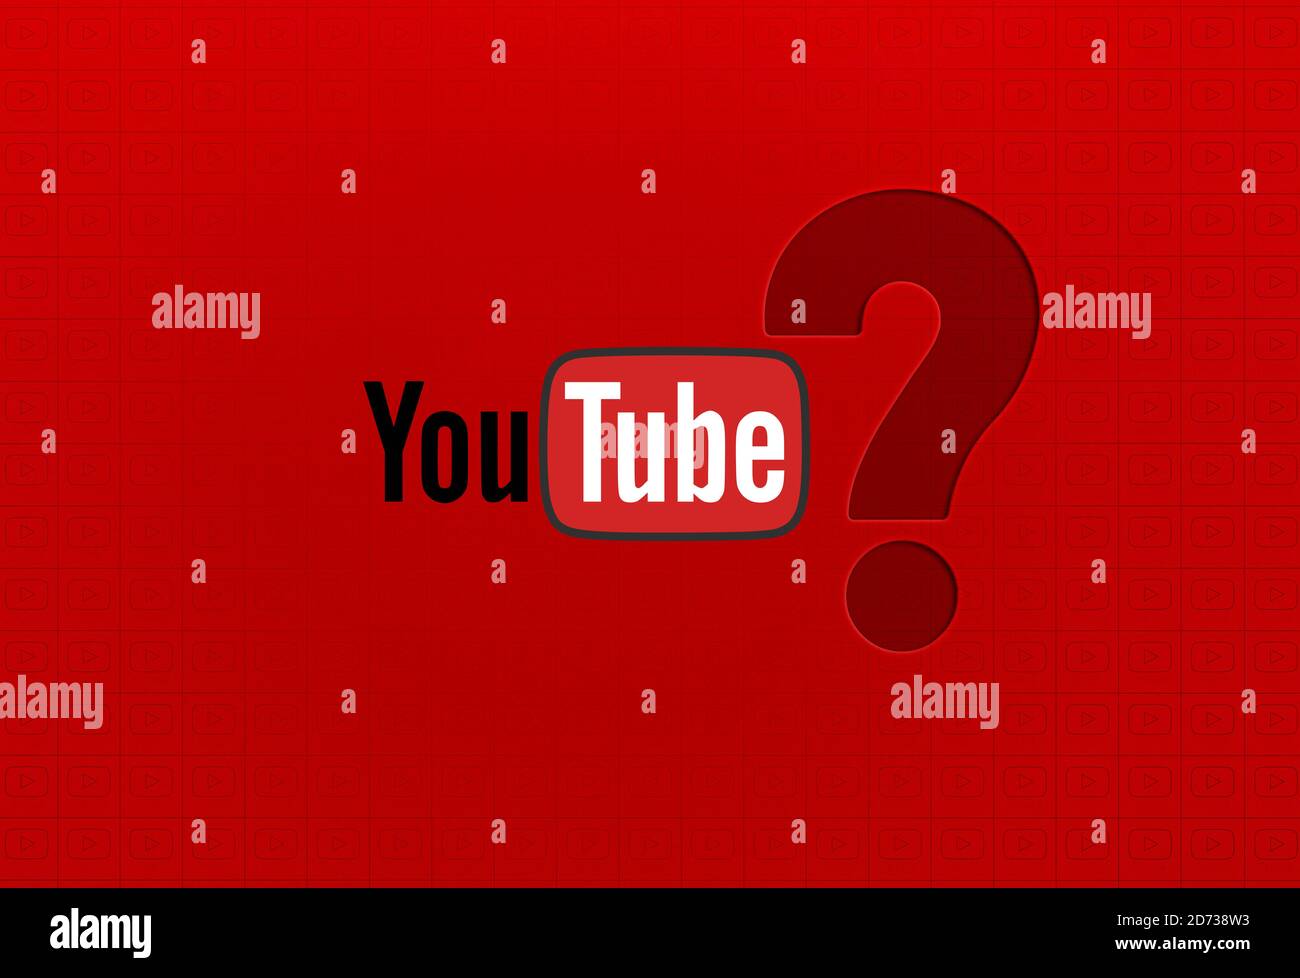 Youtube, Youtube Background Design Stock Photo